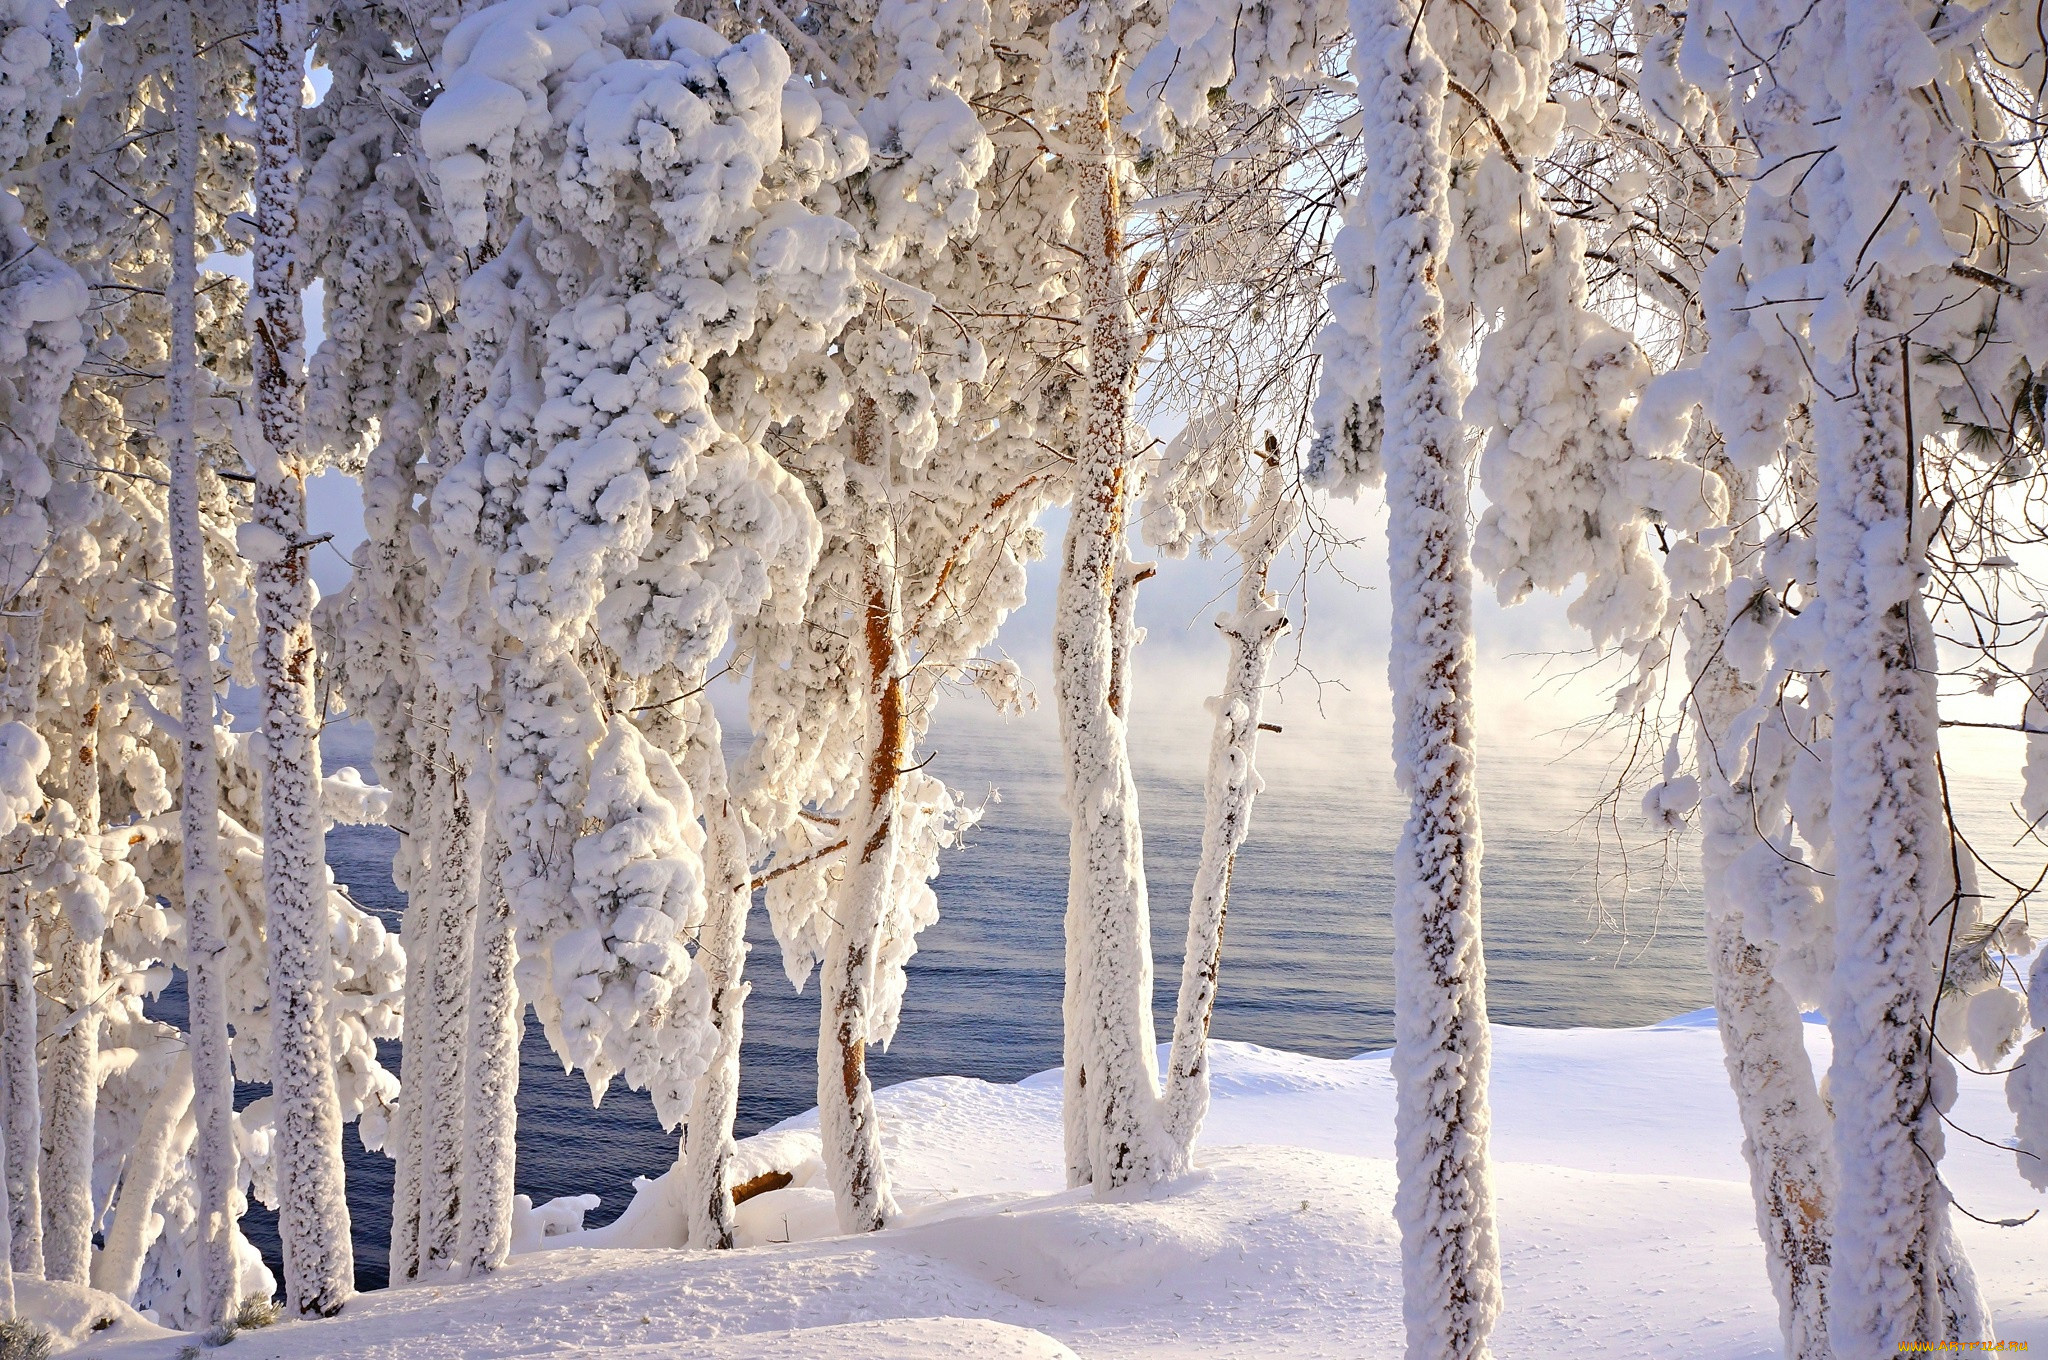 Фф и в морозном лесу я навеки. Зимняя природа. Красивая зима. Красивый зимний лес. Красота природы зимой.